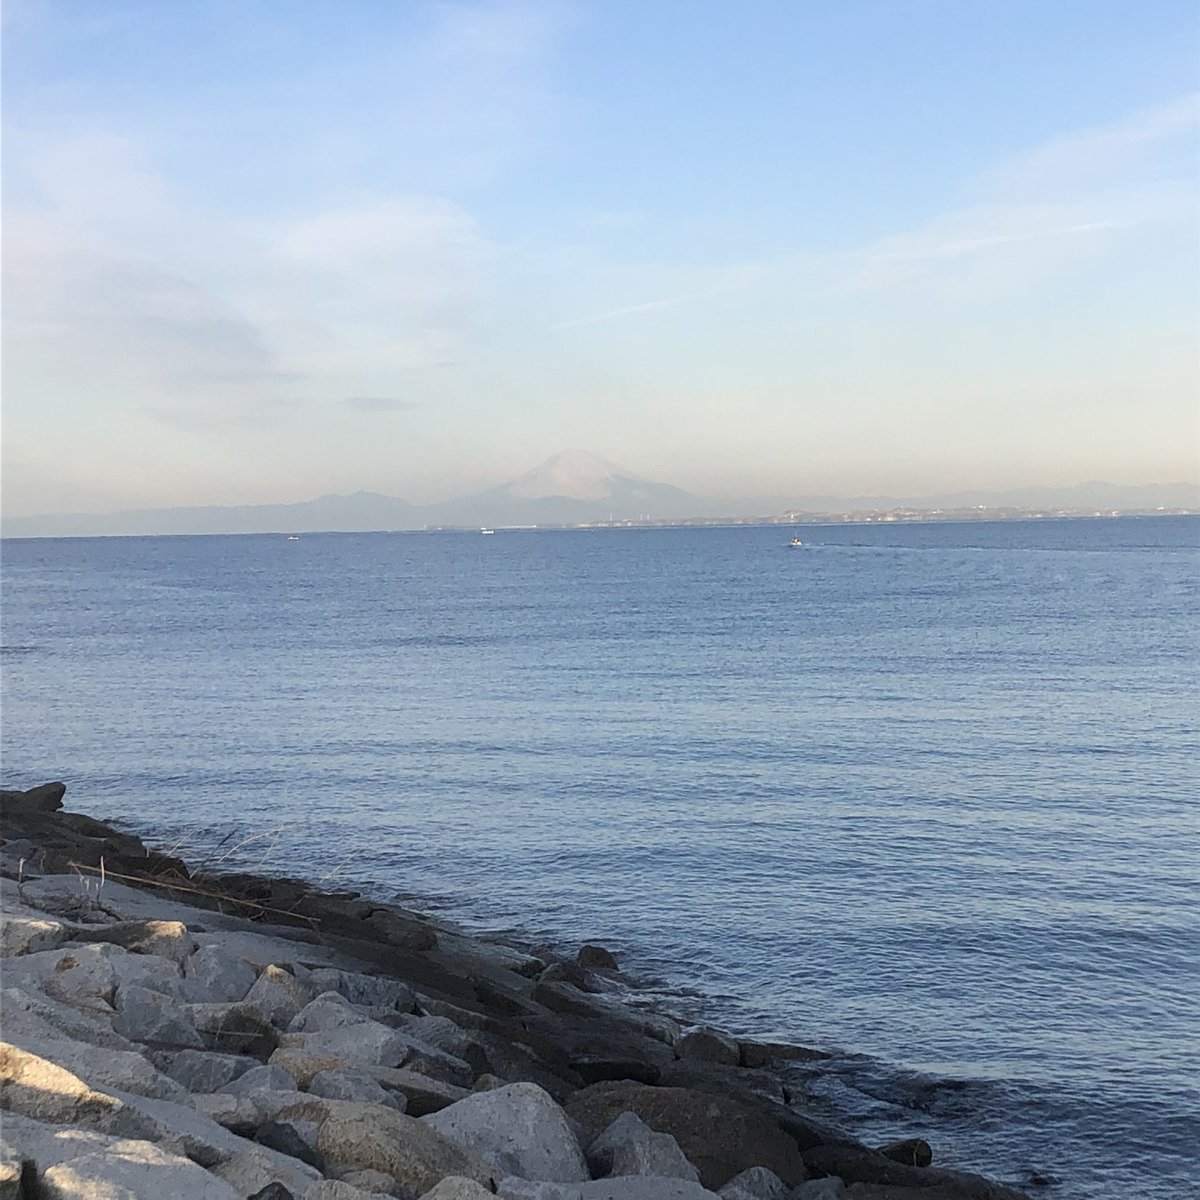 おやじの散歩。普段見られない富士山🗻の姿。海と富士山はいいです😁